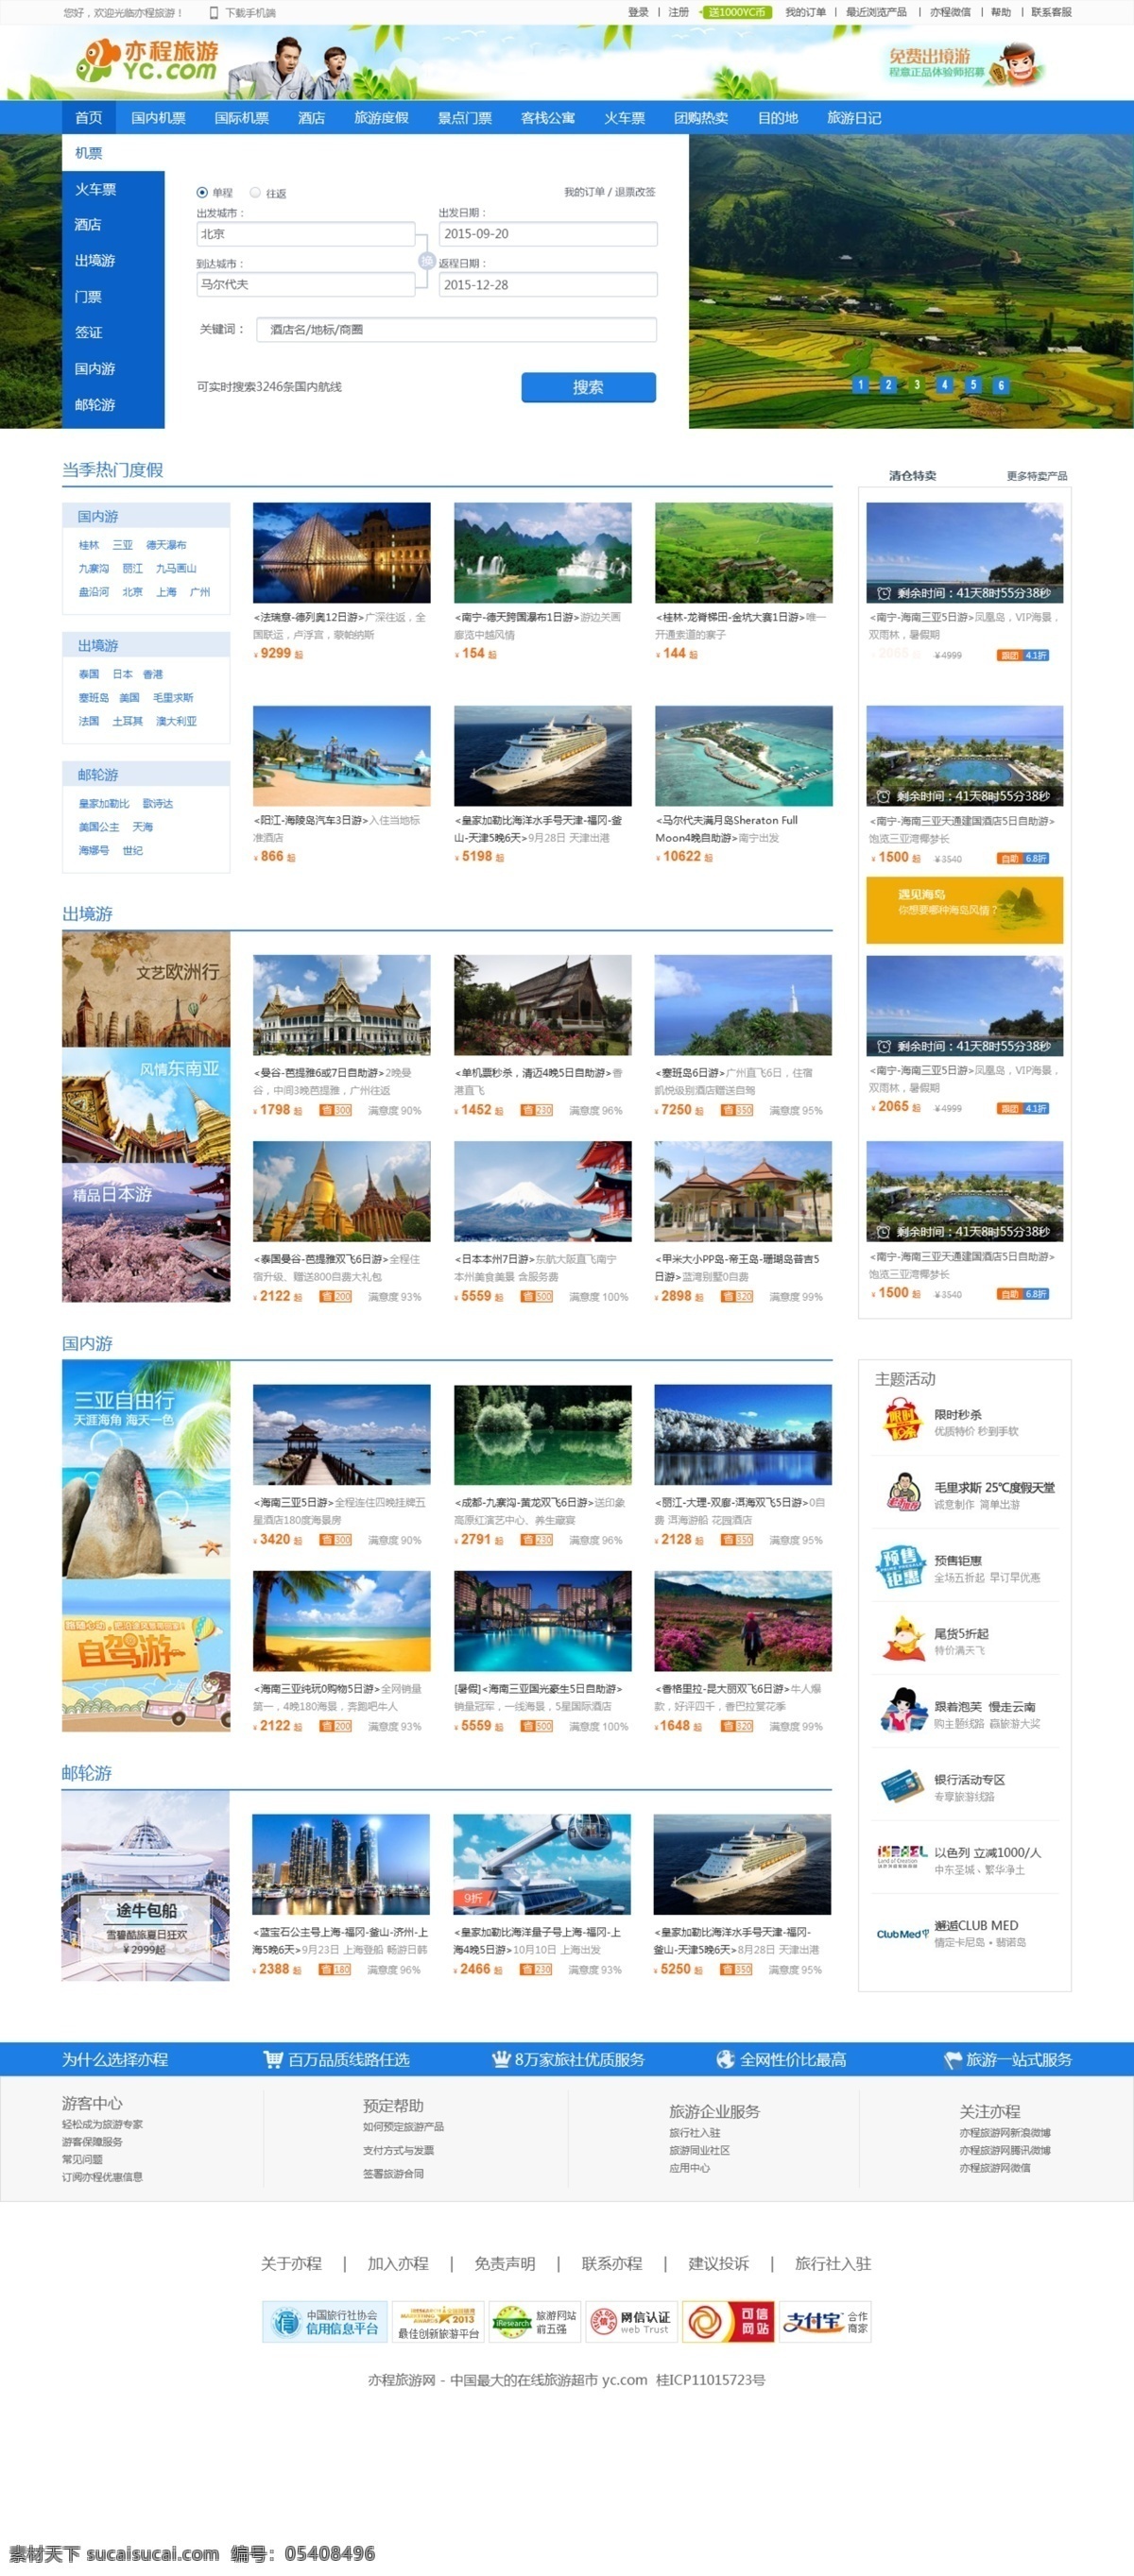 旅游 网页 旅游网页设计 ui web 界面设计 中文模板